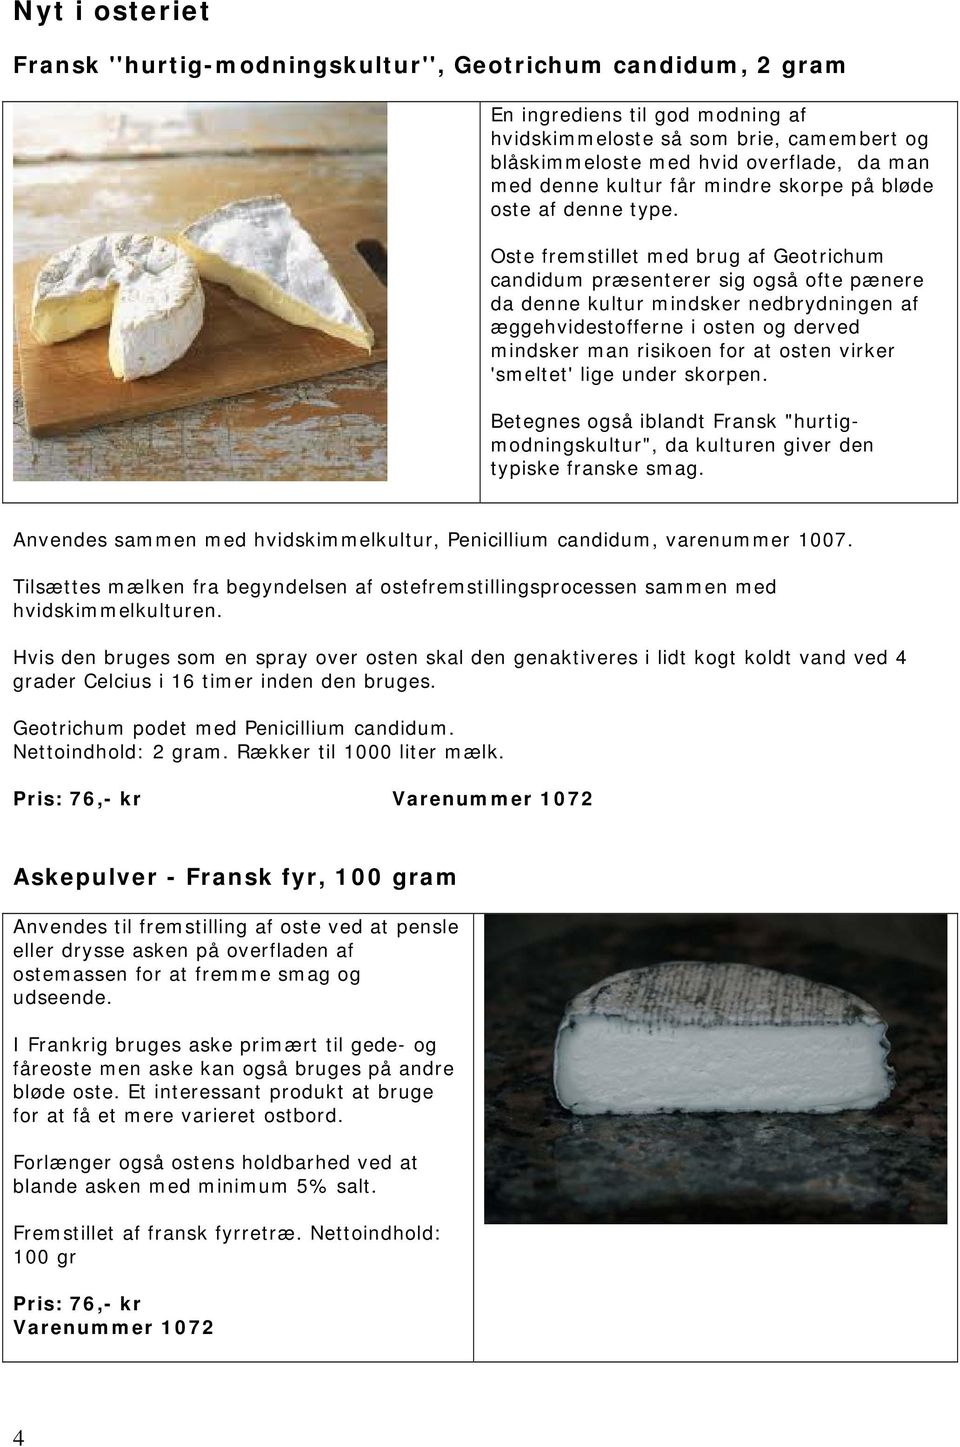 Oste fremstillet med brug af Geotrichum candidum præsenterer sig også ofte pænere da denne kultur mindsker nedbrydningen af æggehvidestofferne i osten og derved mindsker man risikoen for at osten